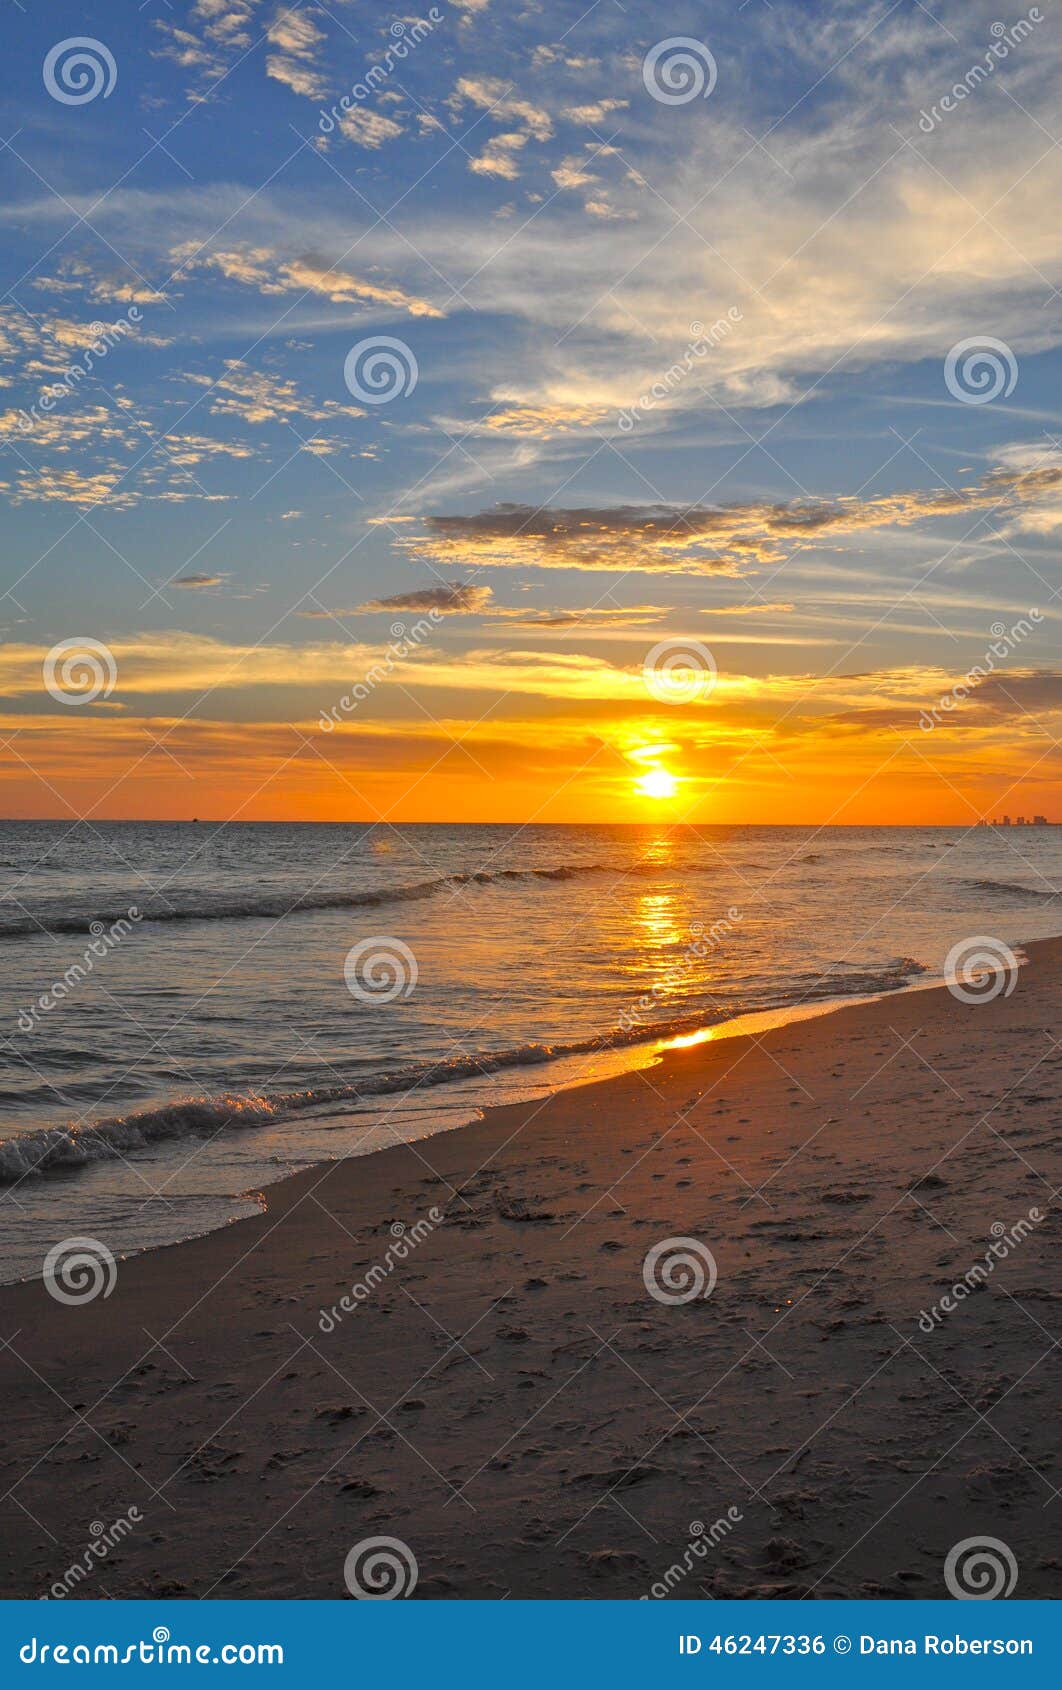 Colorful sunset. Sunset off Panama City Beach